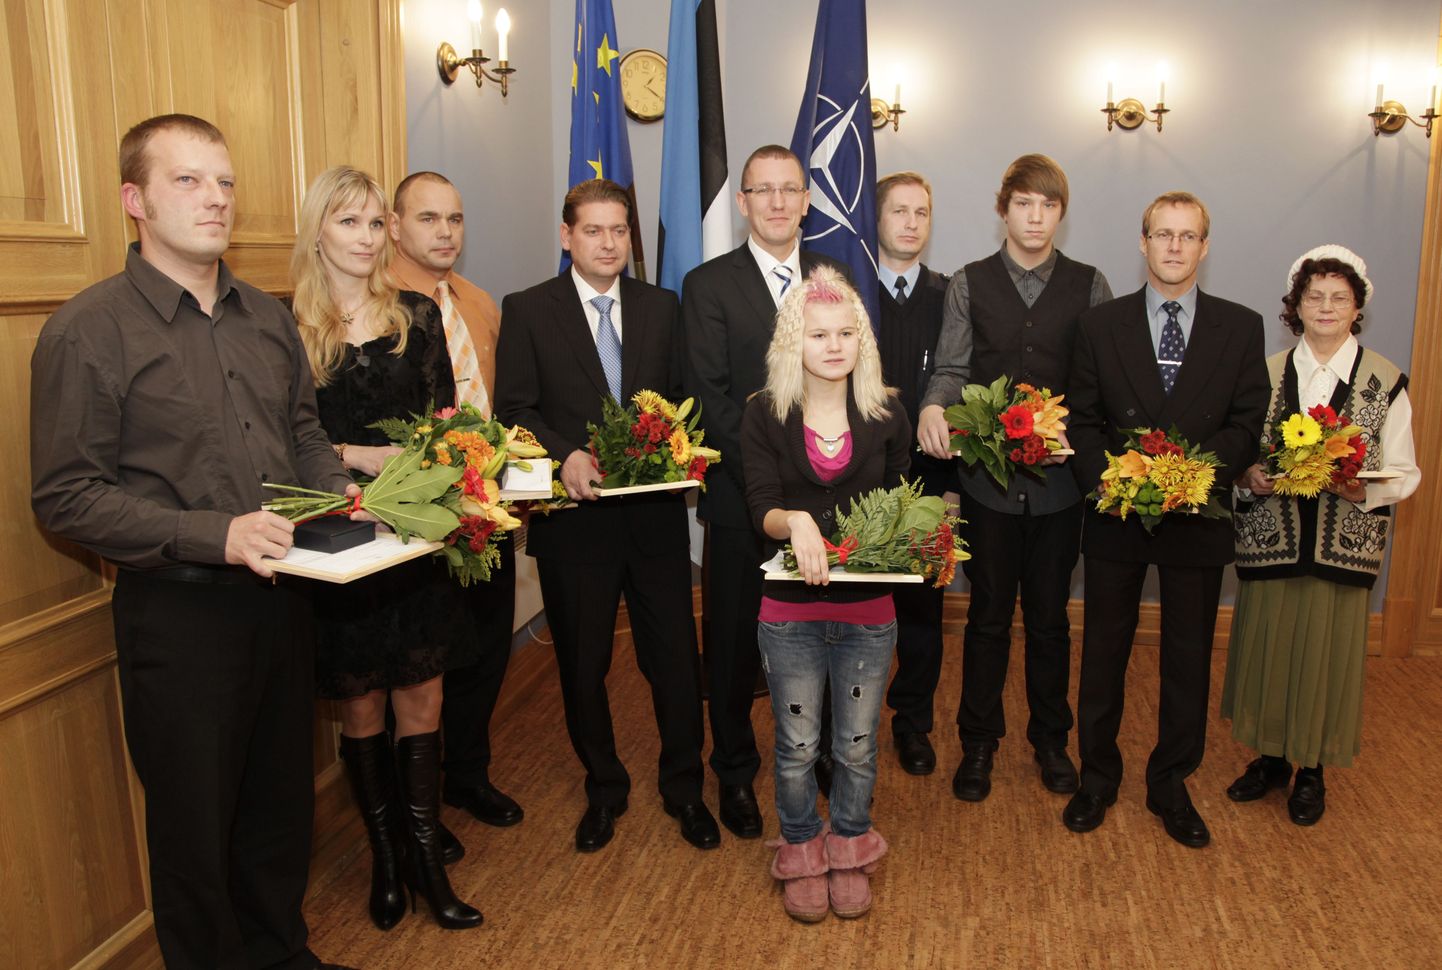 Justiitsministeeriumis toimunud teseremoonial anti kodanikujulguse aumärk tublidele ja julgetele eestimaalastele.